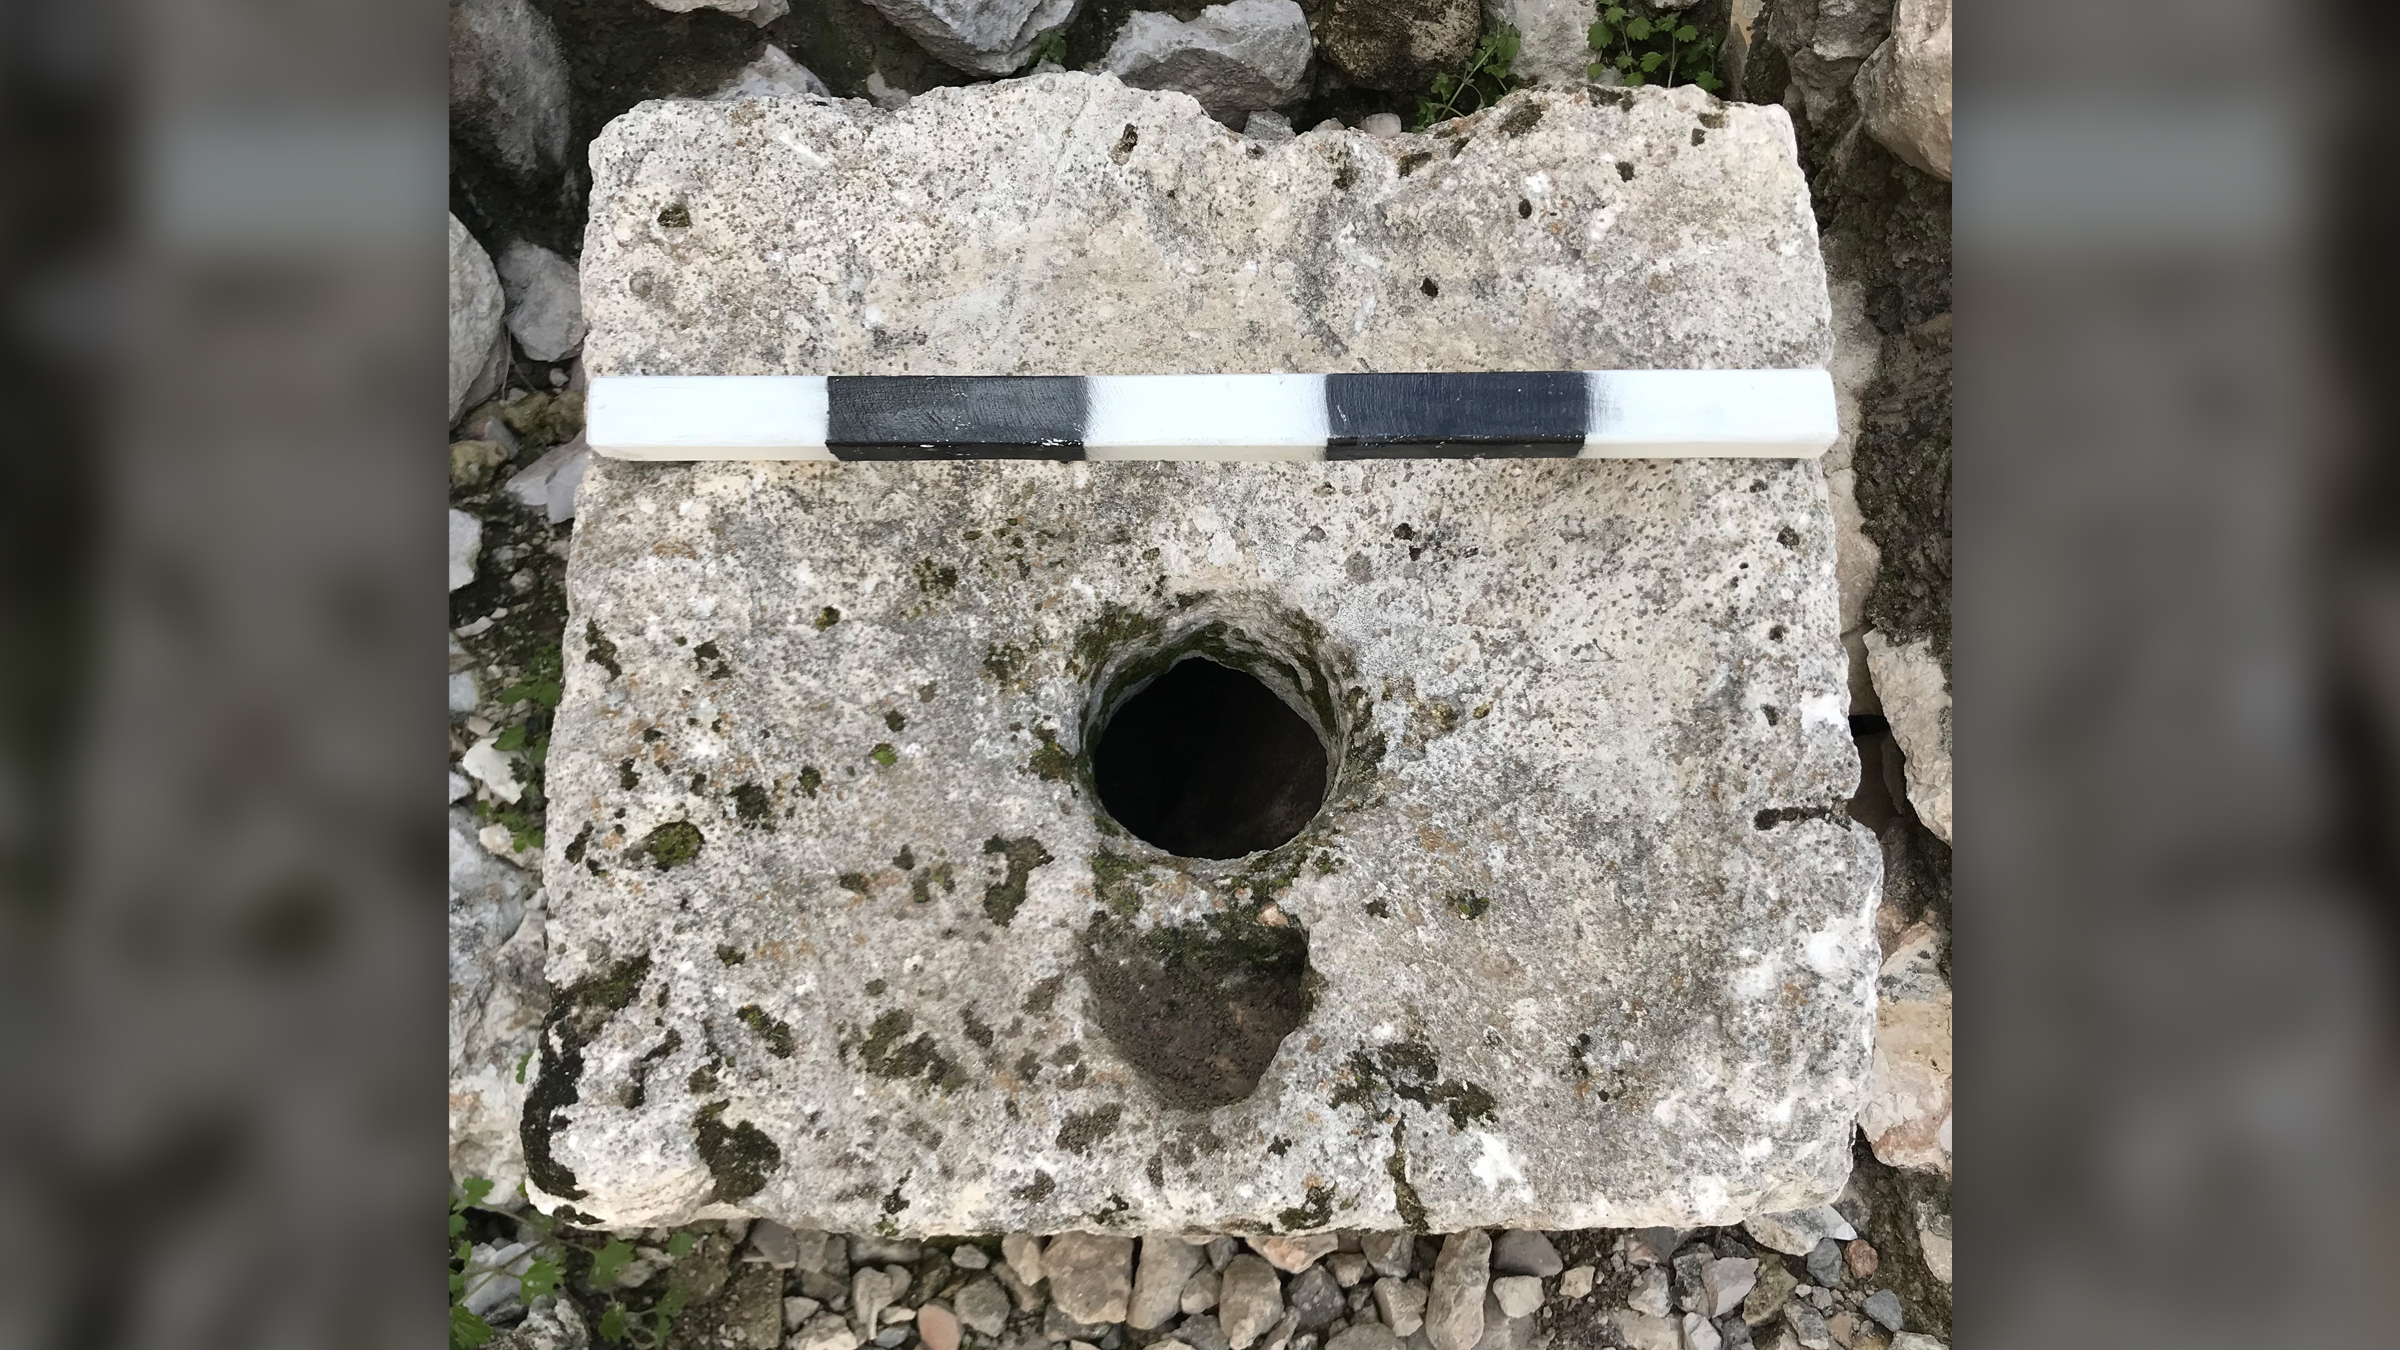 Wir sehen einen weiß-schwarzen Steinblock mit einem Loch in der Mitte.  Daran ist ein Messstab angebracht.